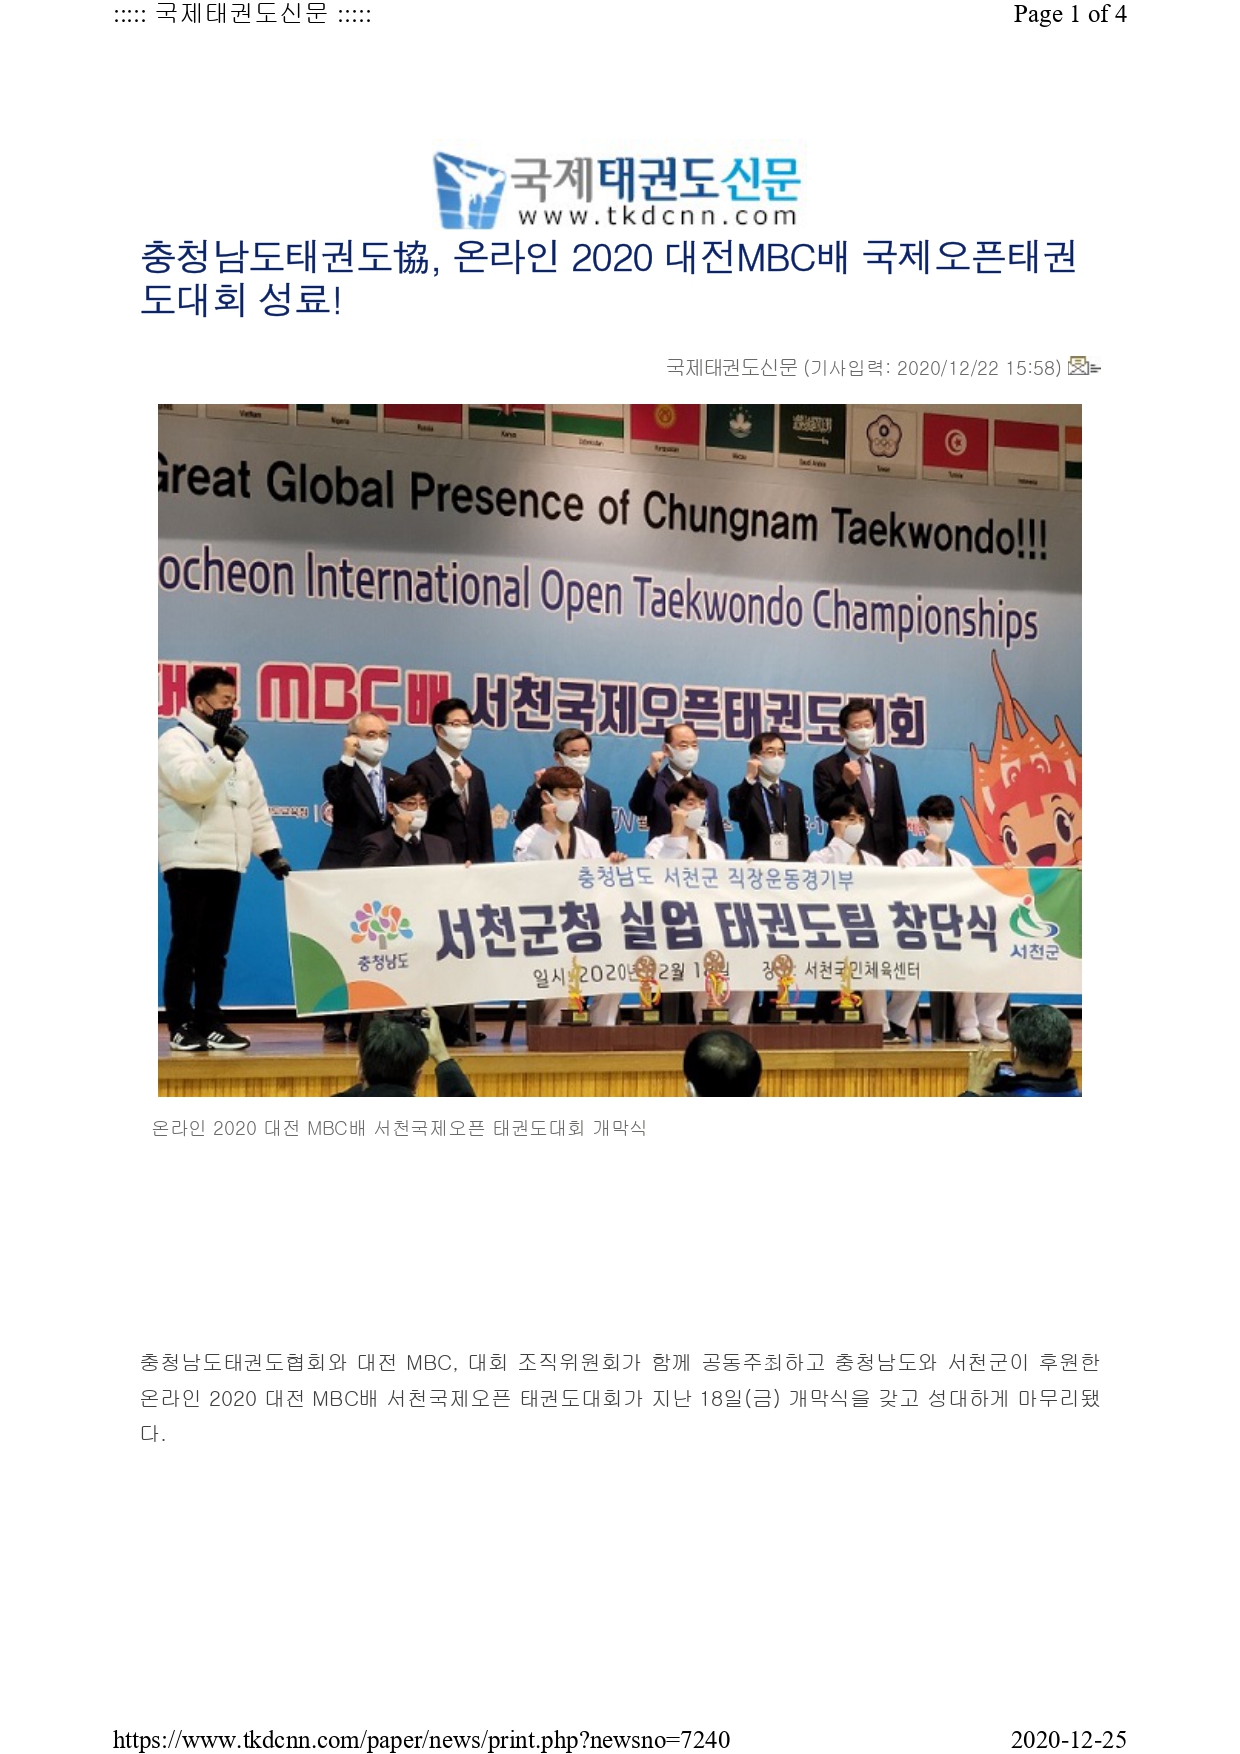 [국제태권도신문] 온라인 2020 대전MBC배 국제오픈태권도대회 성료!_page-0001.jpg